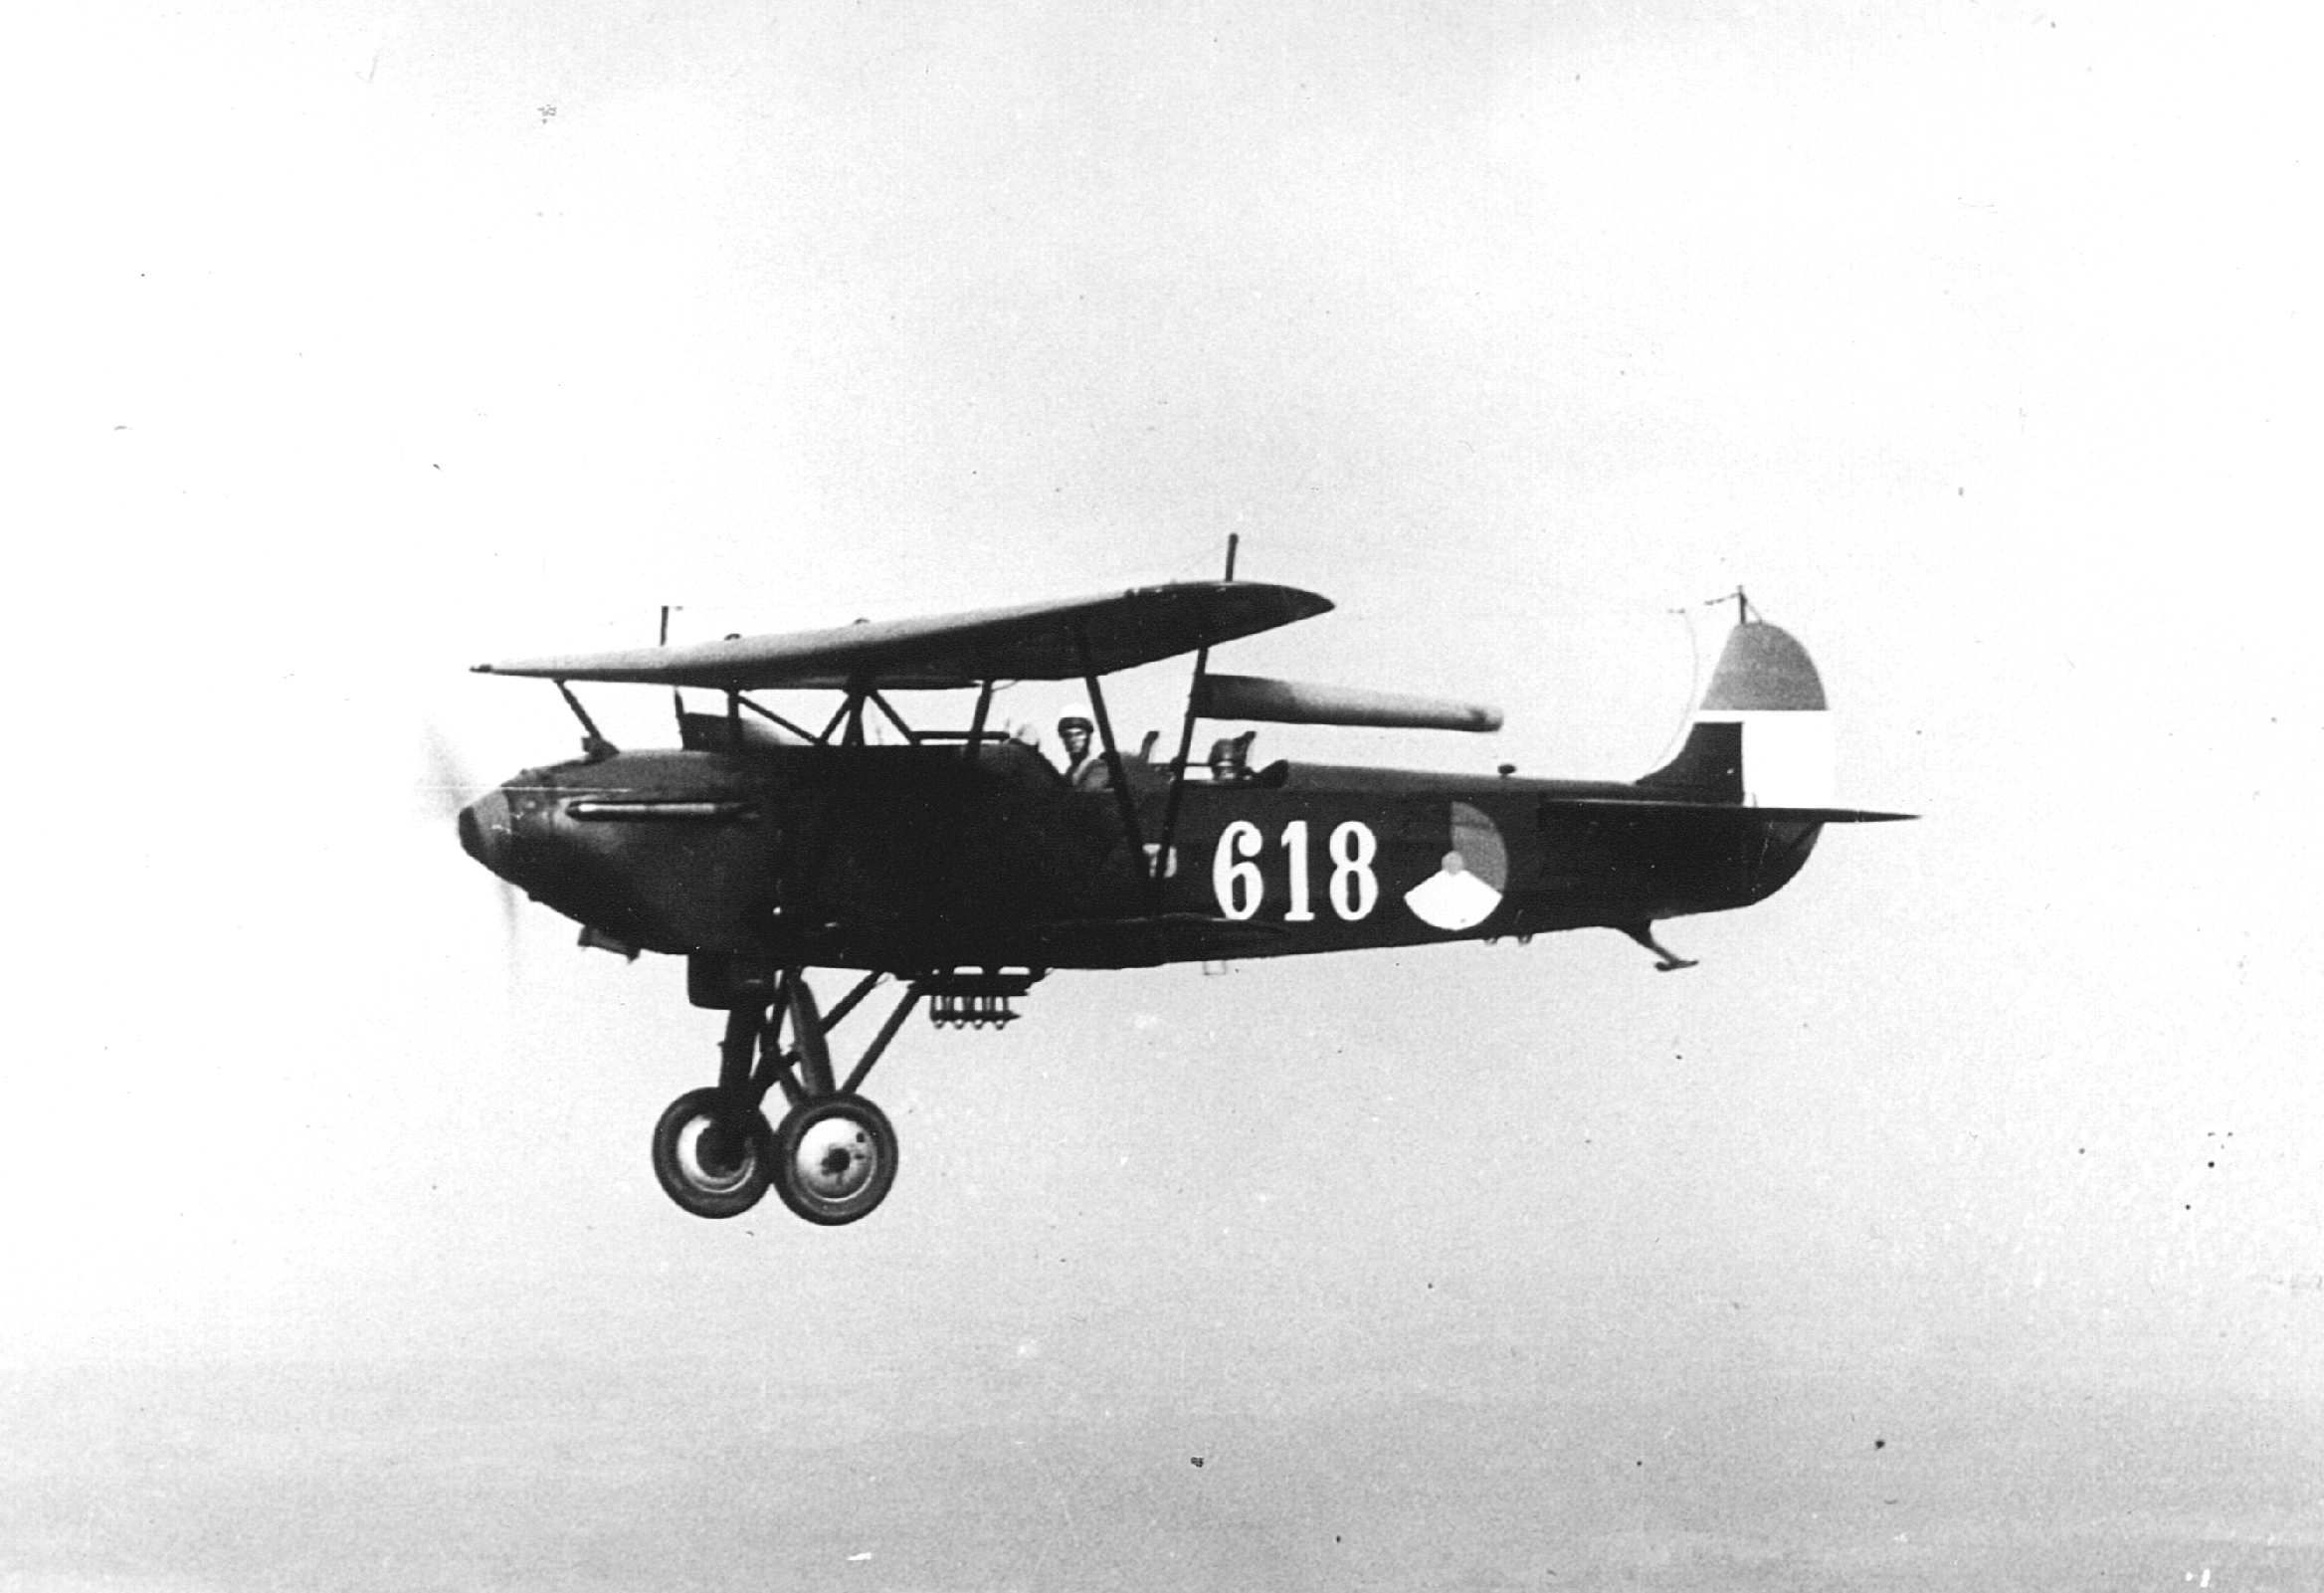 1926-01-01 12:00:00 De Fokker C-V kwam in 1926 in dienst bij de Luchtvaartafdeling als verkenner/lichte bommenwerper. In de meidagen van 1940 werd de C-V nog regelmatig ingezet voor aanvallen met lichte bommen en tactische verkenningen.